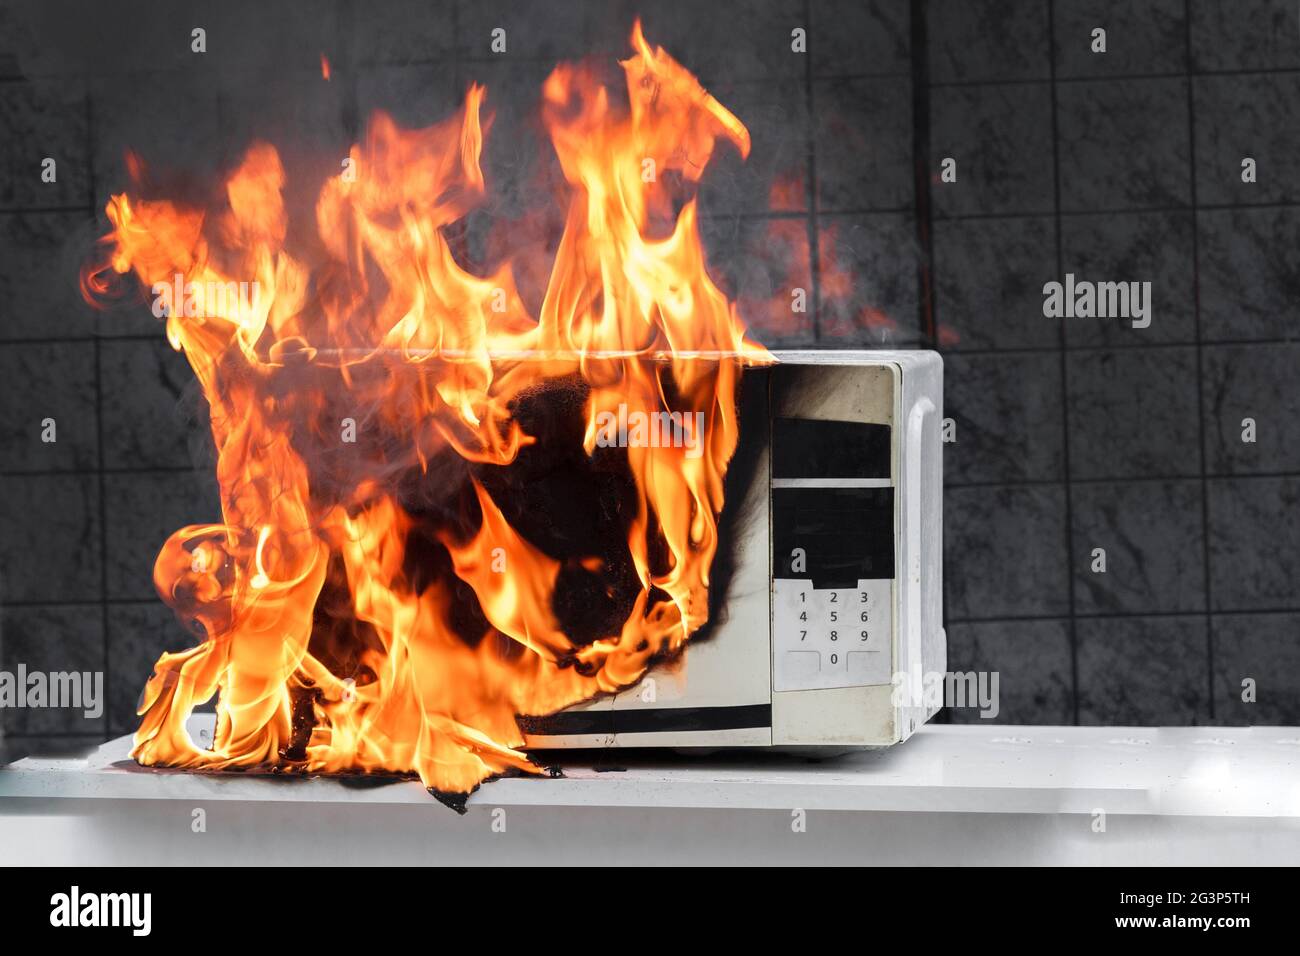 Forno a microonde bianco, nella vista frontale del fuoco, gli apparecchi  elettrici sono incendiati a causa di un funzionamento non corretto Foto  stock - Alamy